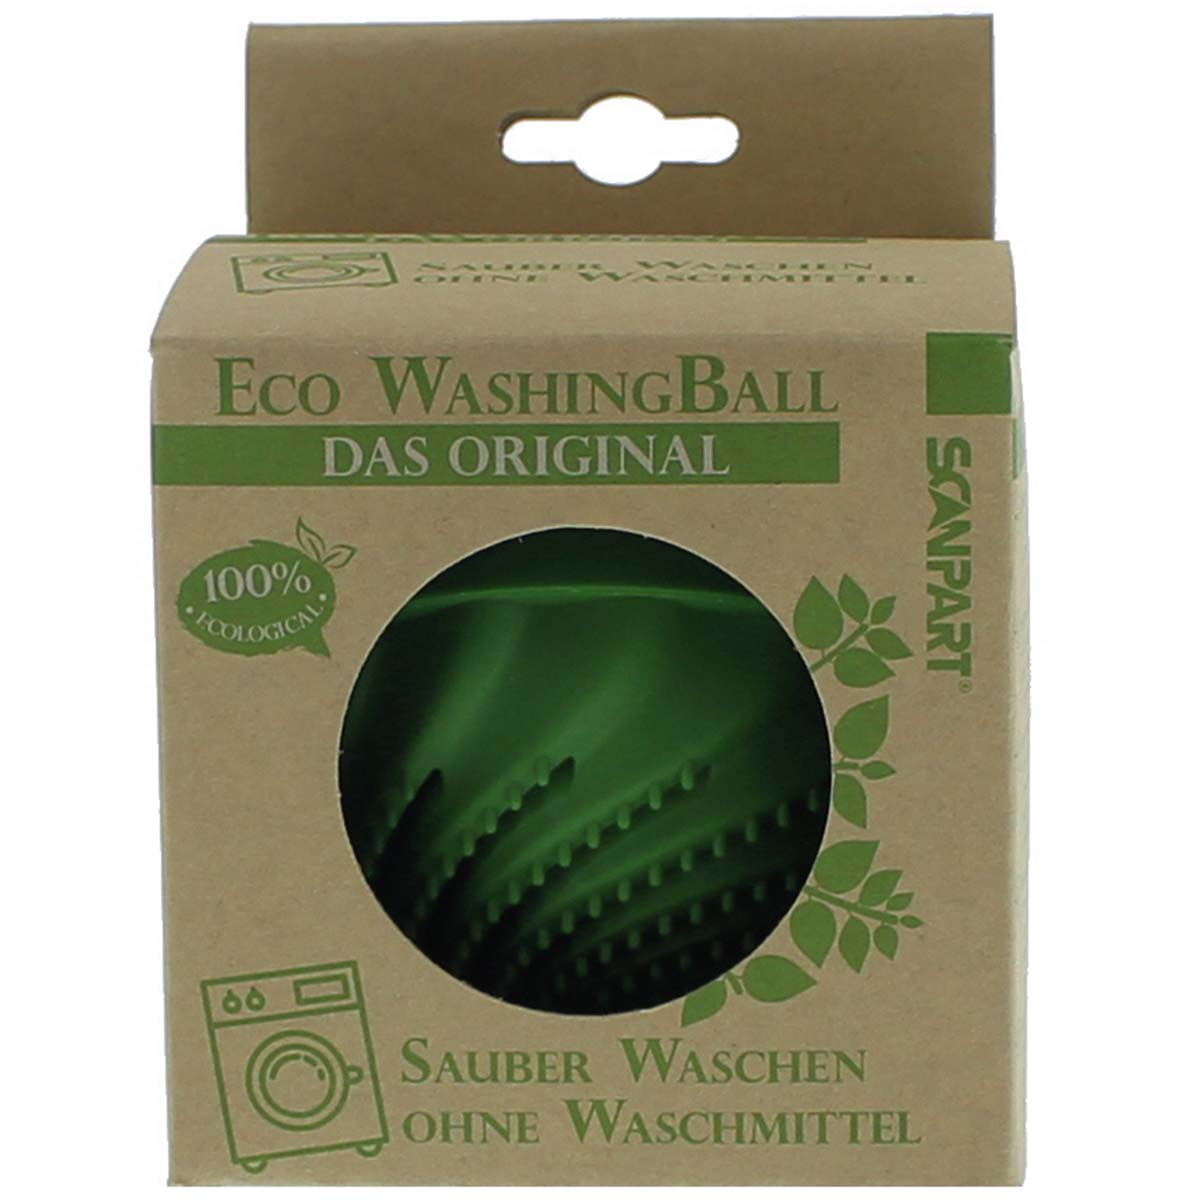 SCANPART Eco Washing Ball Waschzubehör